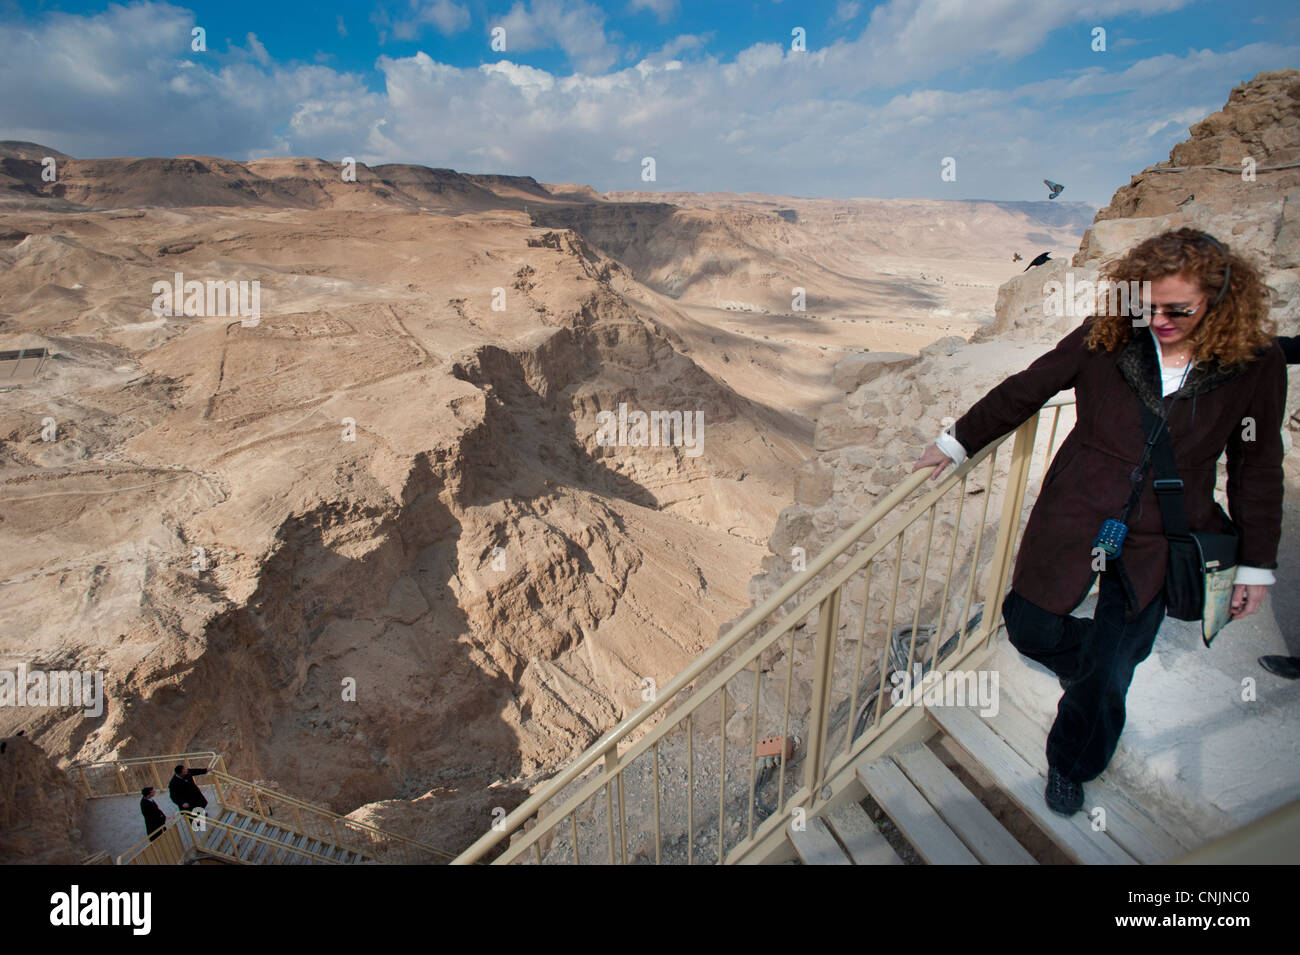 Nahost Israel antiken Stadt von Masada am Toten Meer - eine Frau macht ihren Weg nach unten eine Treppe des befestigten Plateaus Stockfoto